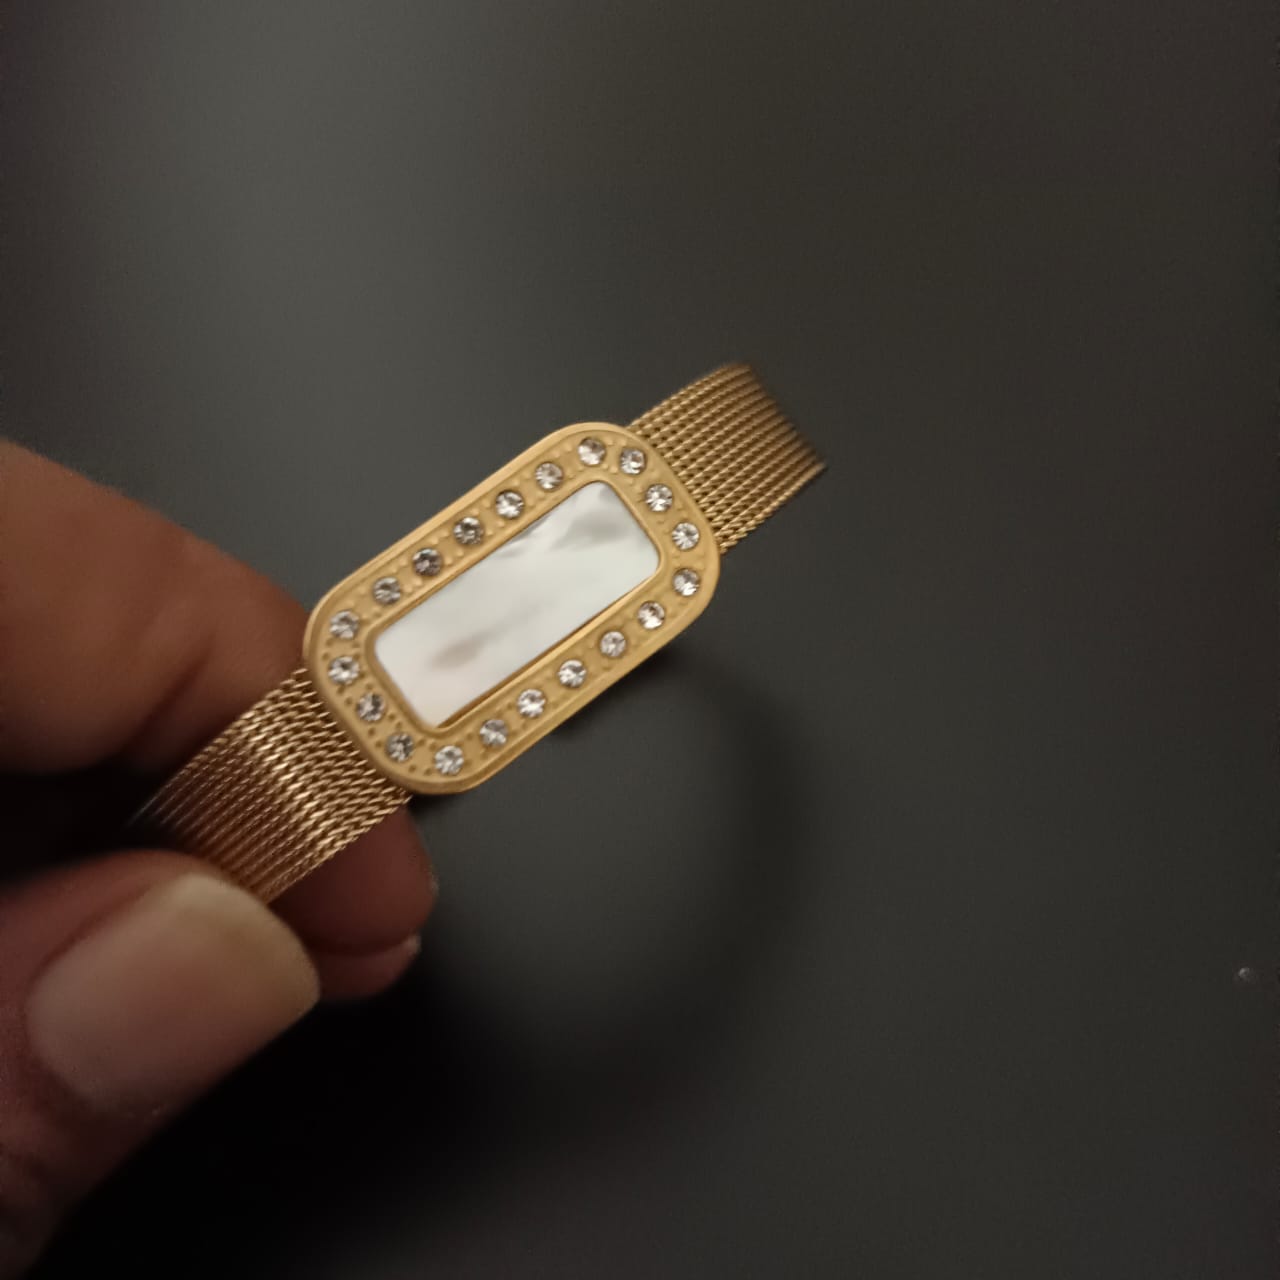 New Golden Rectangular Watch Design Bracelet For Women and Girl-Jack Marc (White Gold Dial)